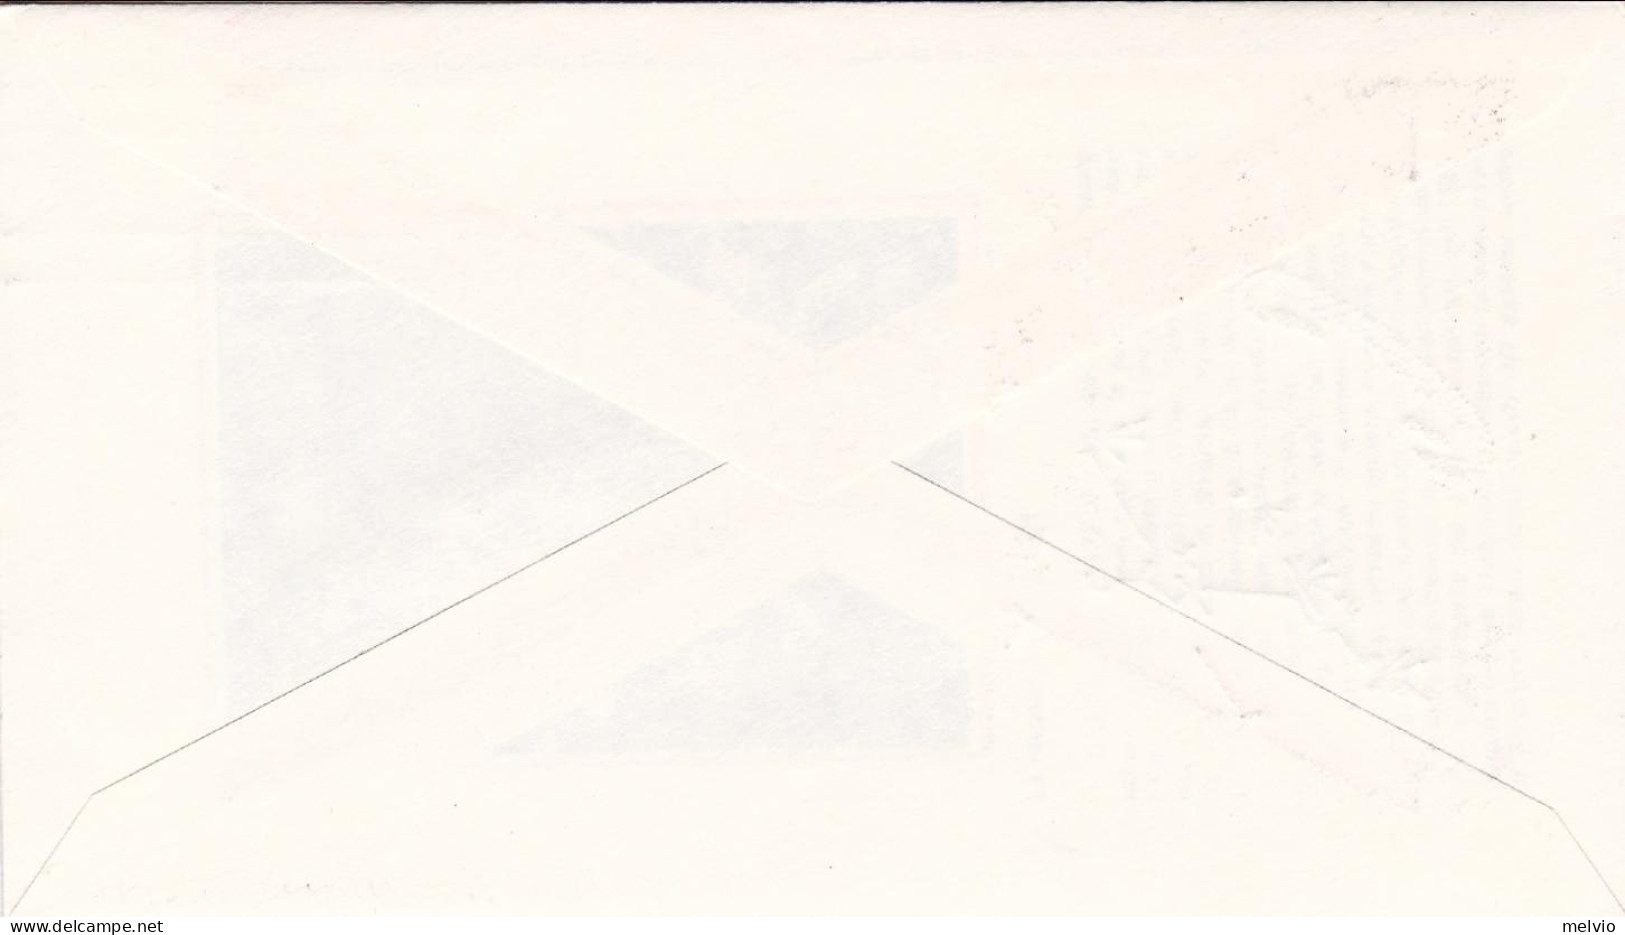 1977-U.S.A. Busta + Cartoncino Commemorativo Per Il Lancio Della Sonda Spaziale  - 3c. 1961-... Cartas & Documentos